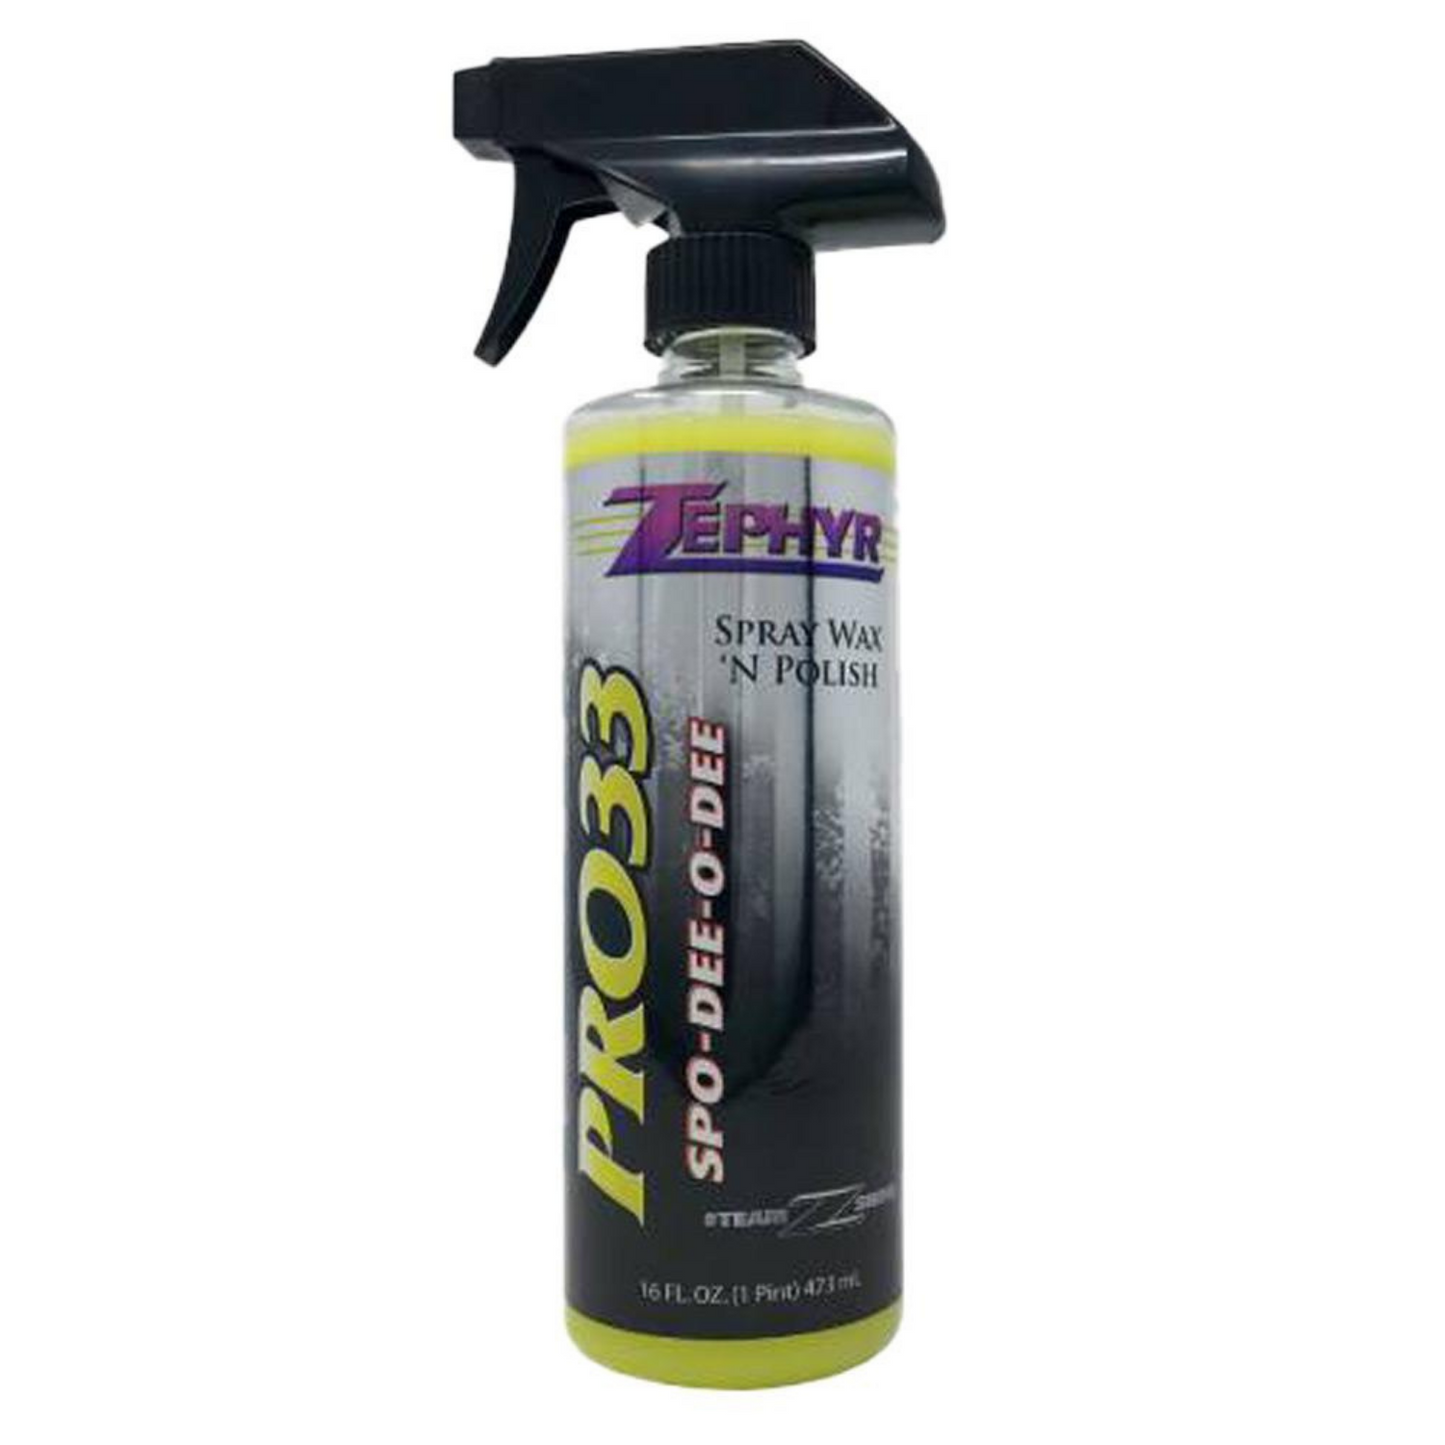 Pro33 Spray Wax & Polish